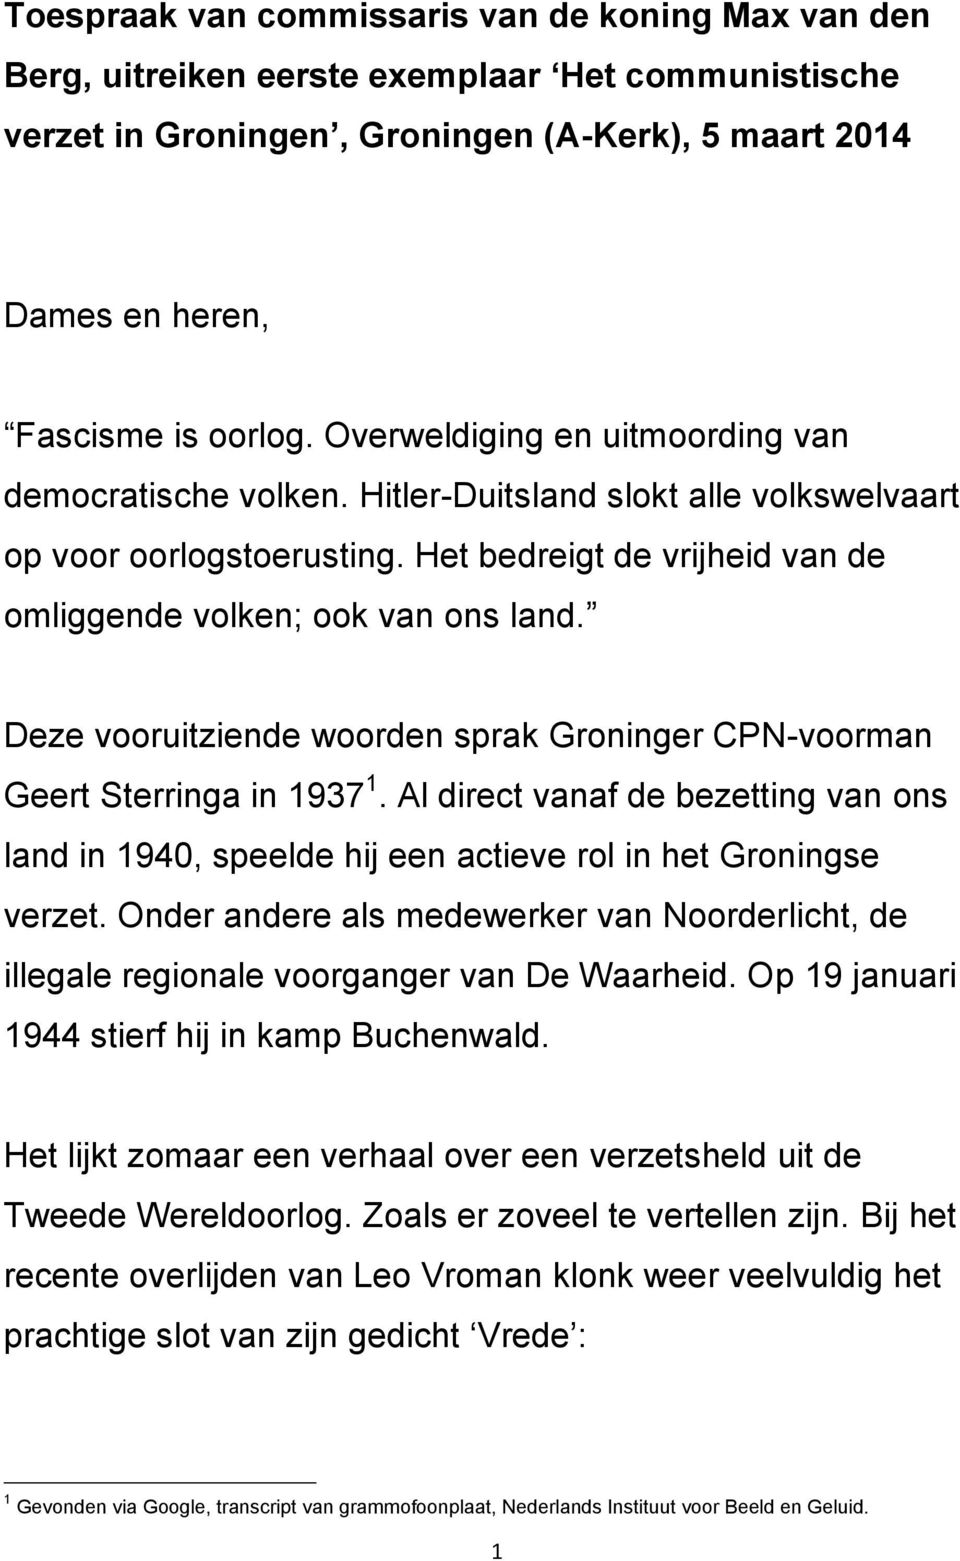 Deze vooruitziende woorden sprak Groninger CPN-voorman Geert Sterringa in 1937 1. Al direct vanaf de bezetting van ons land in 1940, speelde hij een actieve rol in het Groningse verzet.